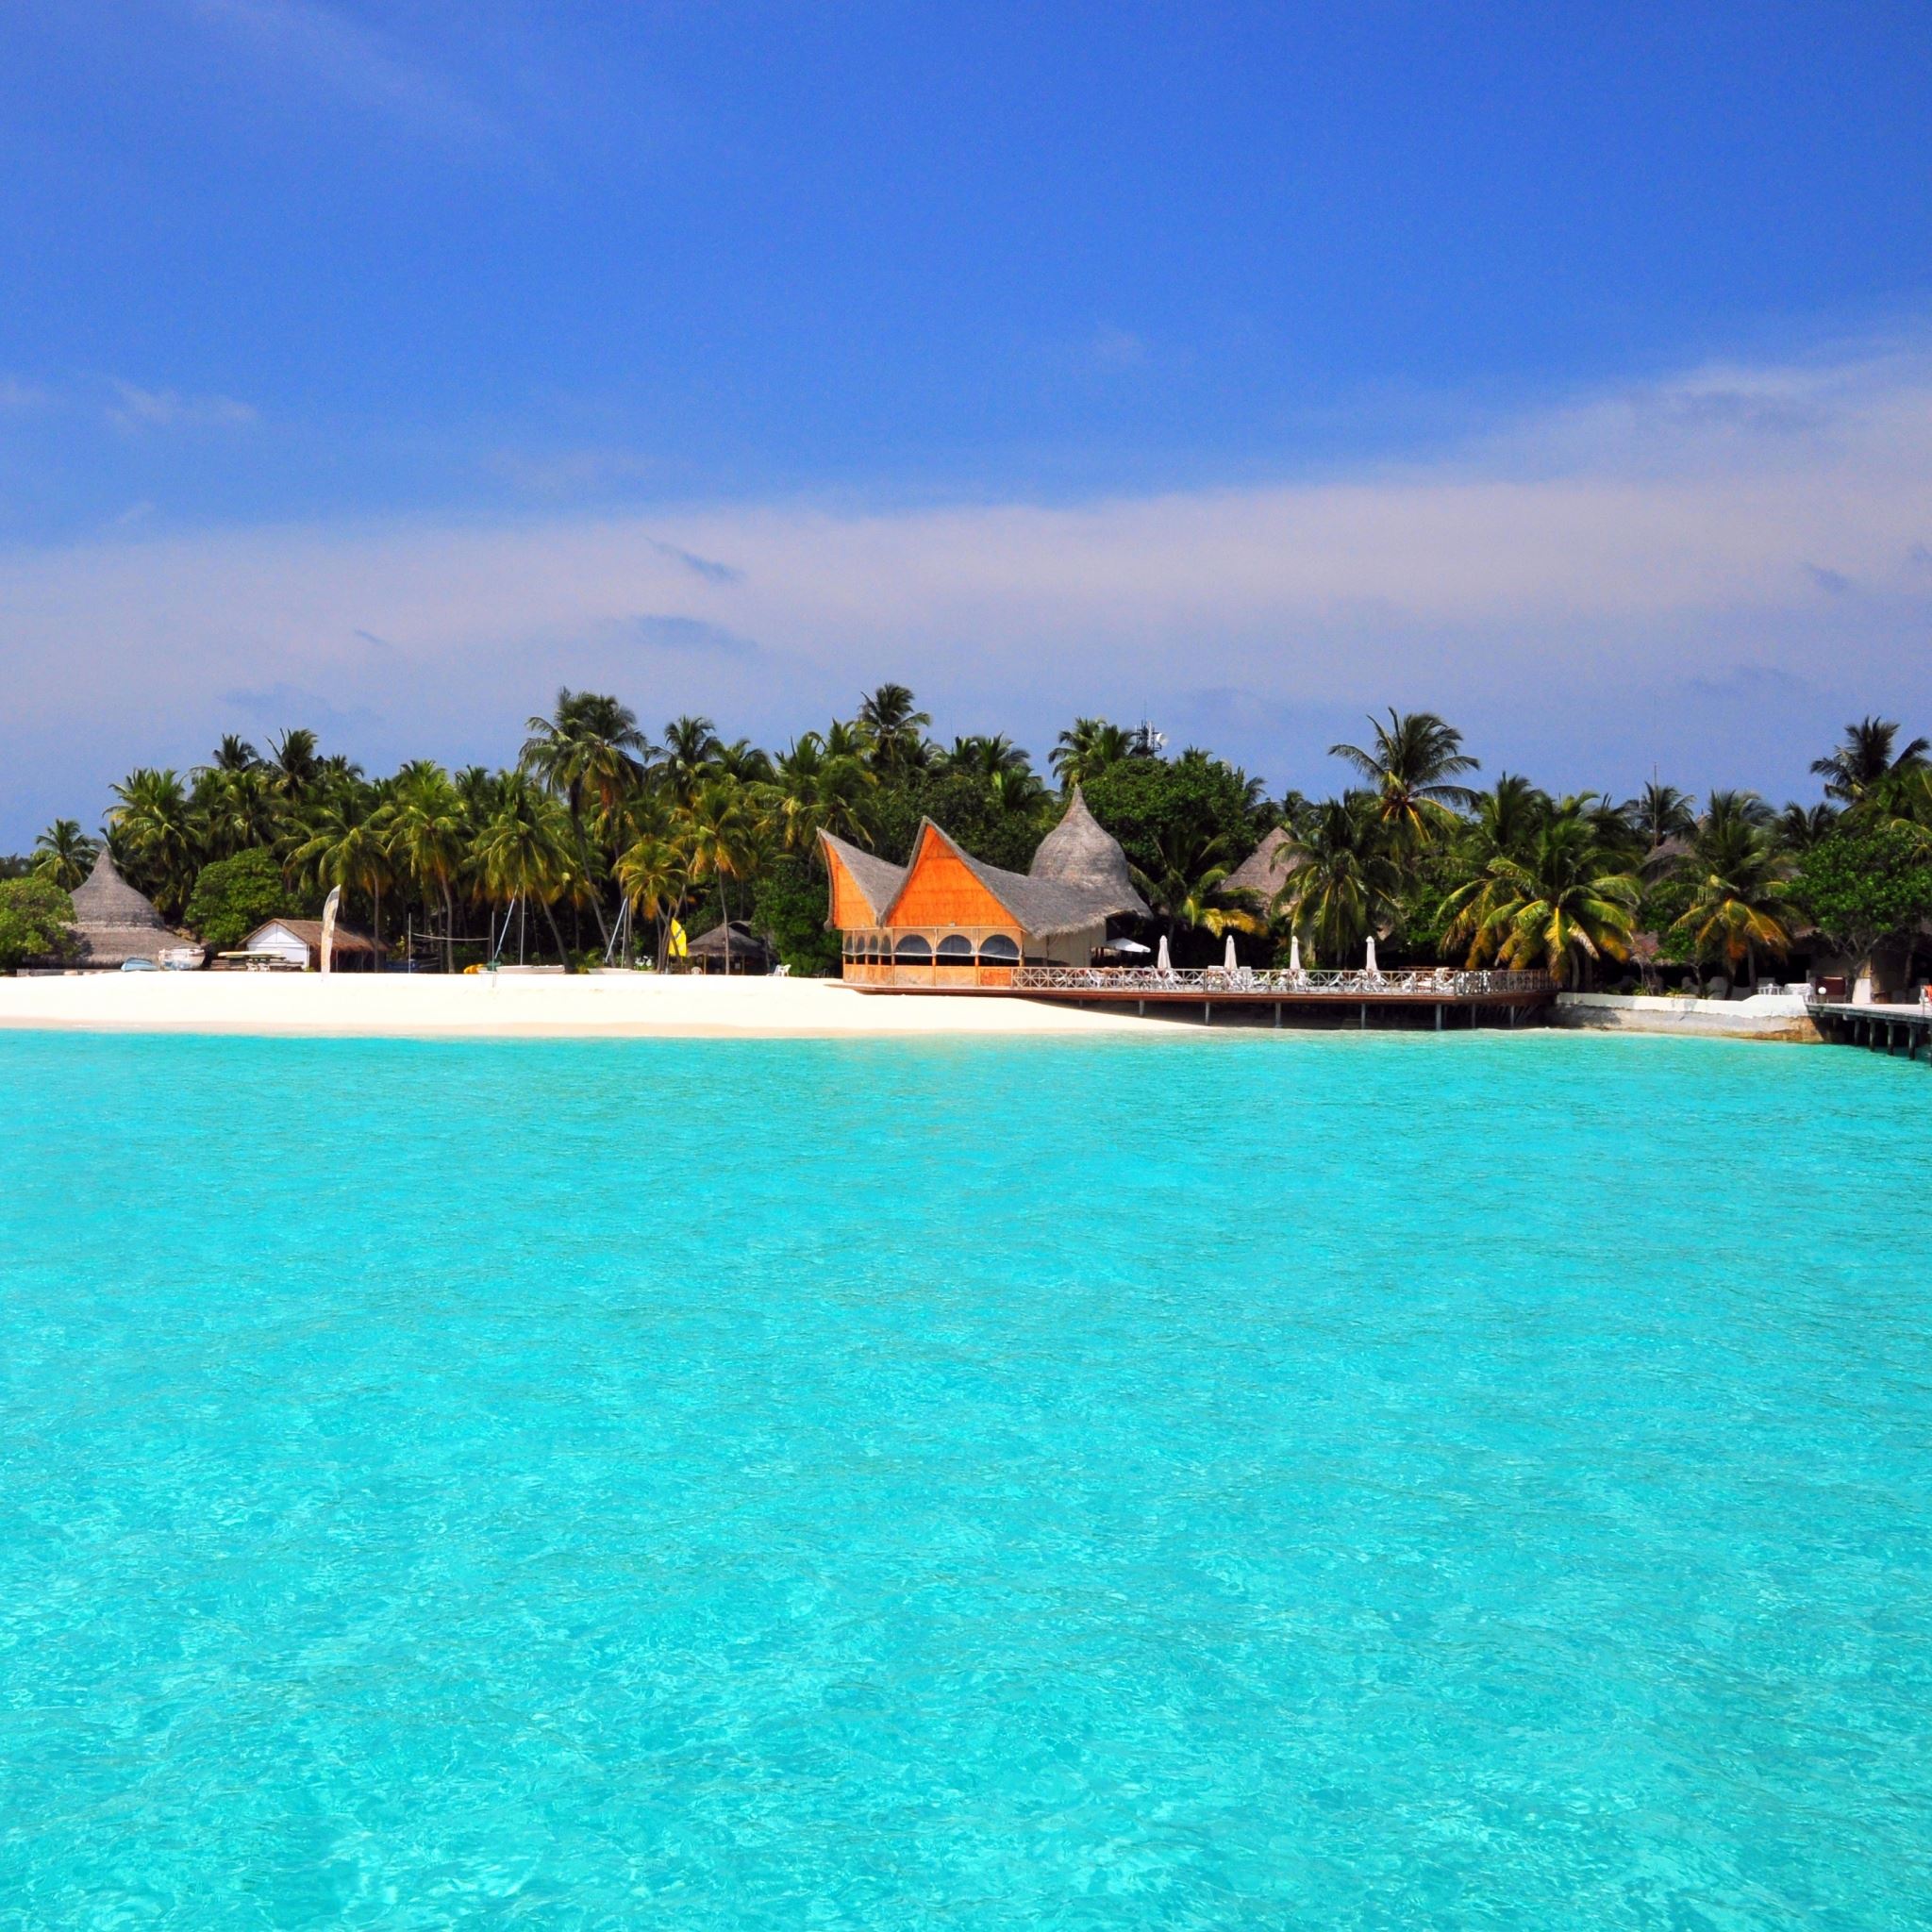 Maldives Tropical Beach Island iPad Air wallpaper 